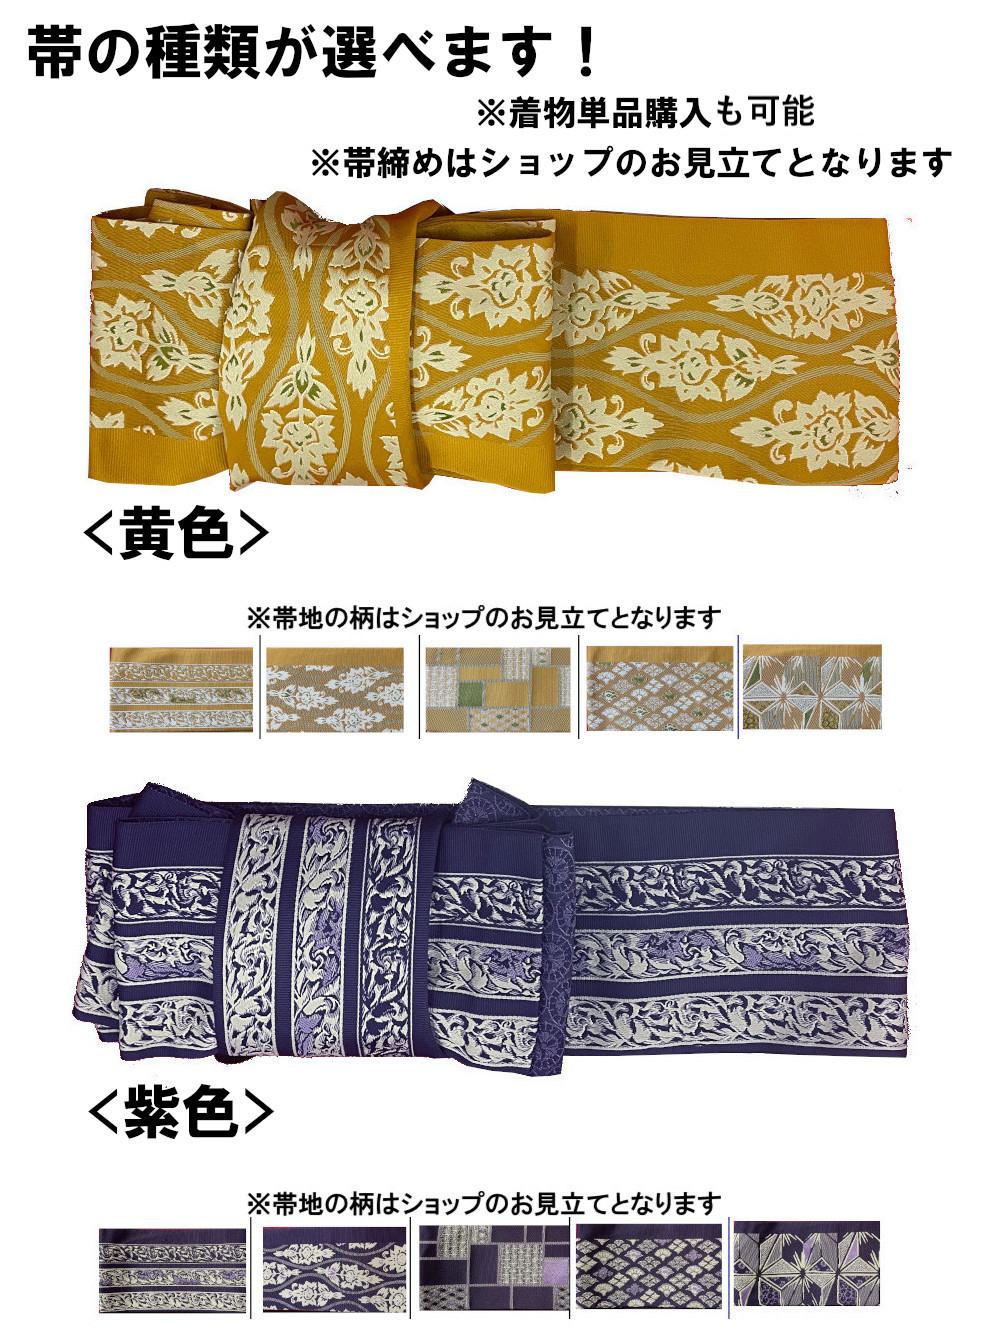 衿なし着物(リボン帯付き) [花雪輪 グレー] ※着物単品 ¥11,000画像